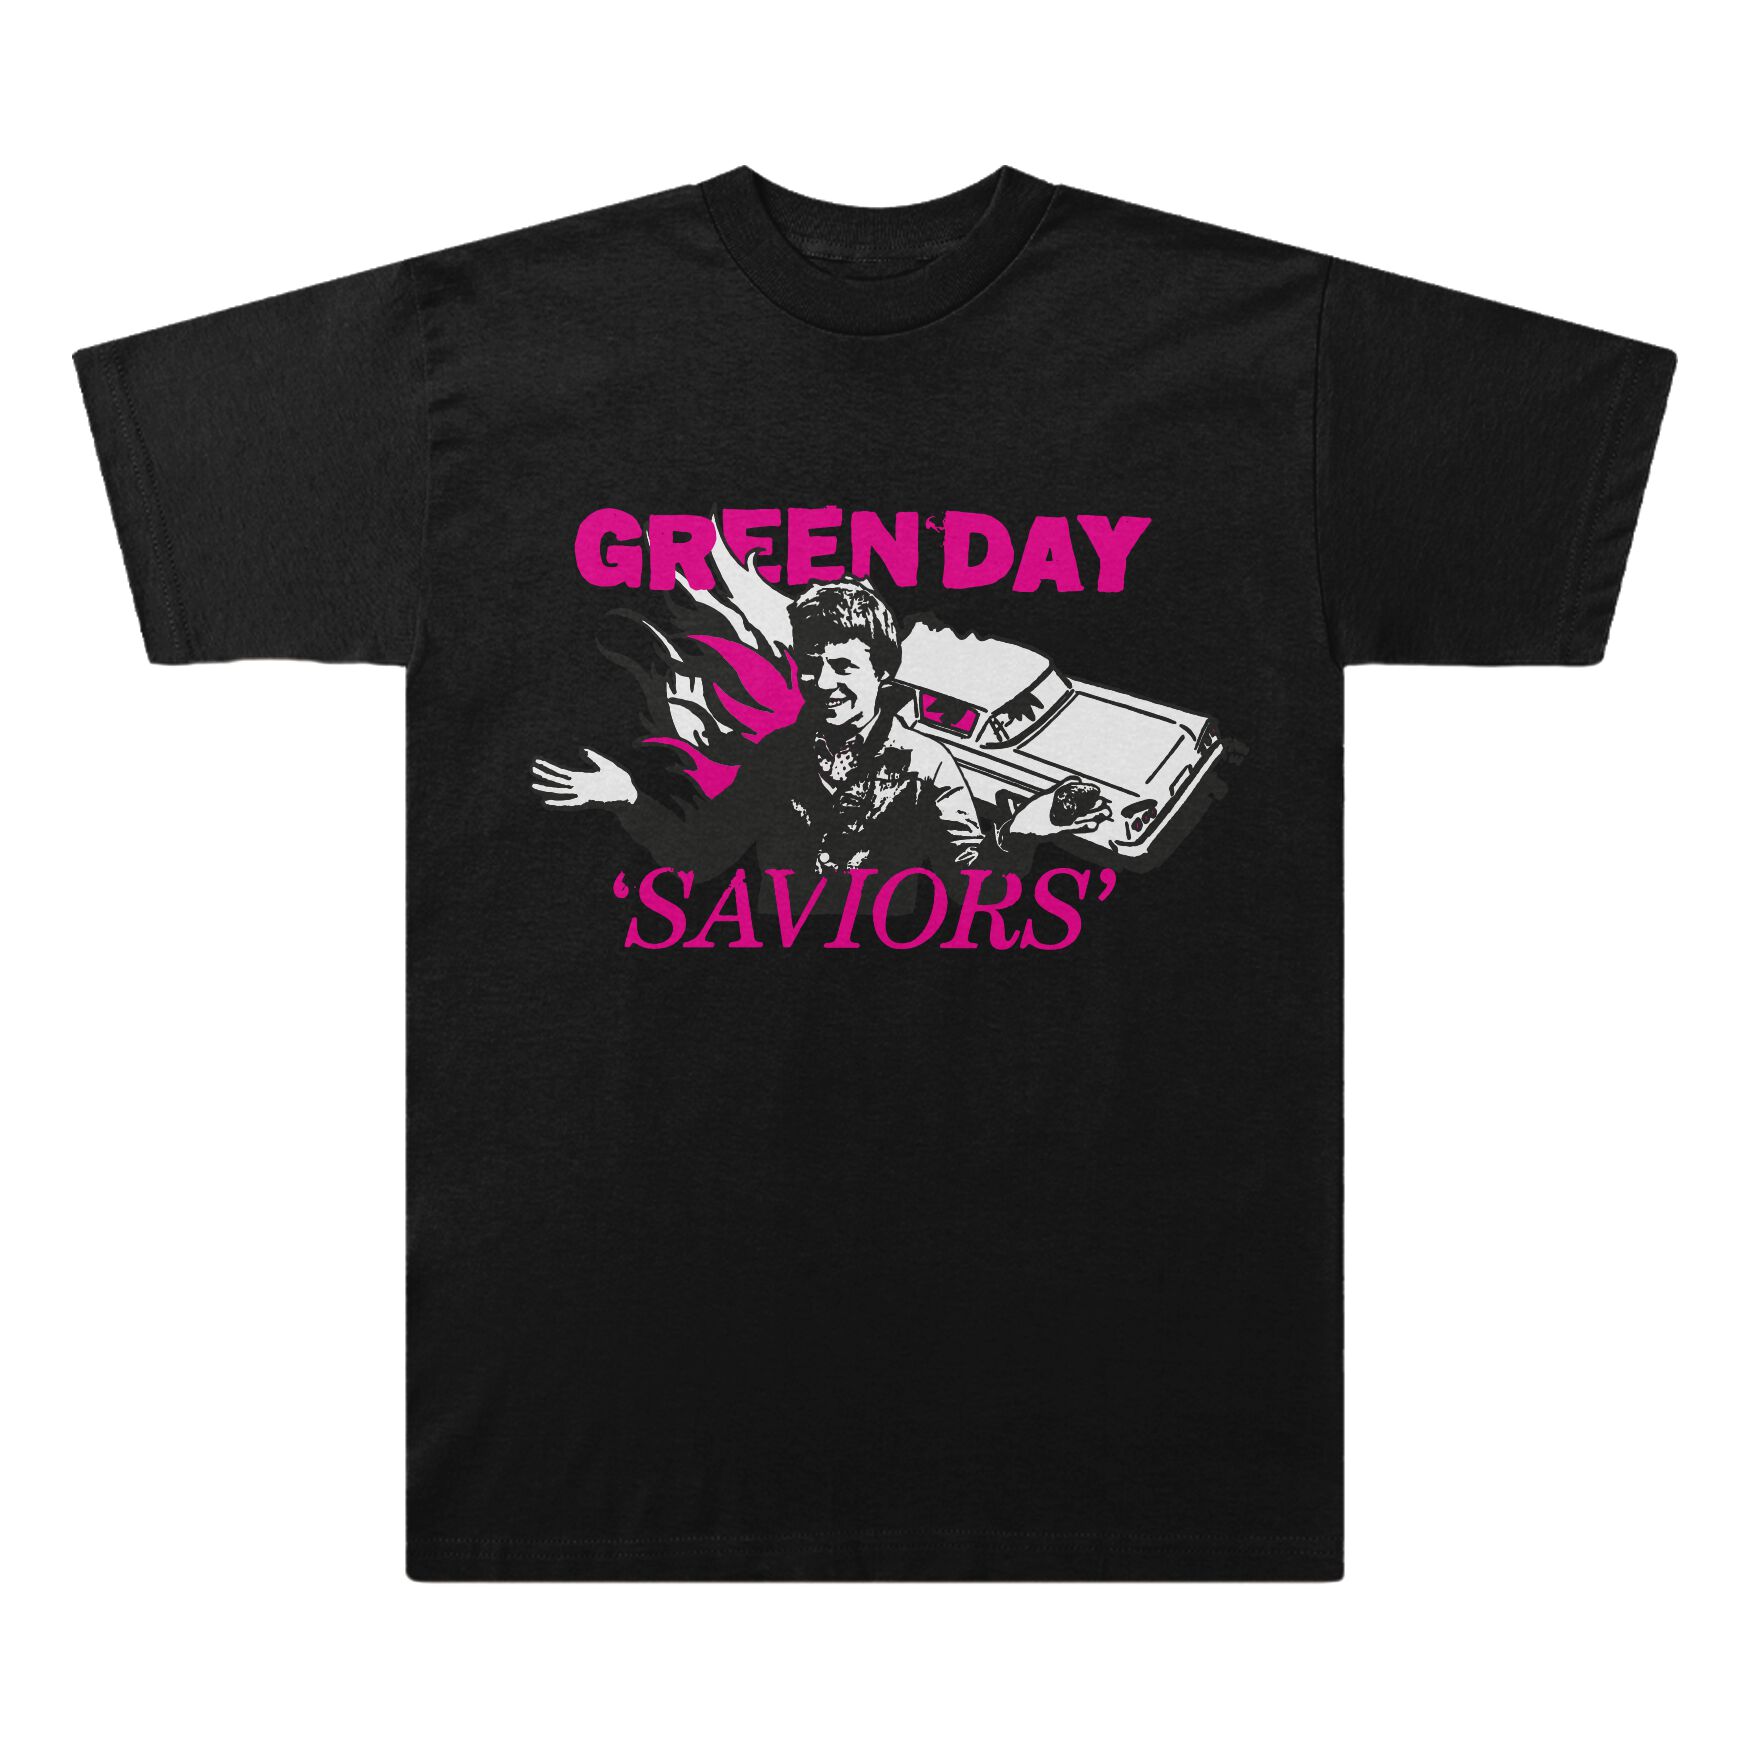 Green Day T-Shirt - Saviors Illustration - S bis XXL - für Männer - Größe XL - schwarz  - Lizenziertes Merchandise!